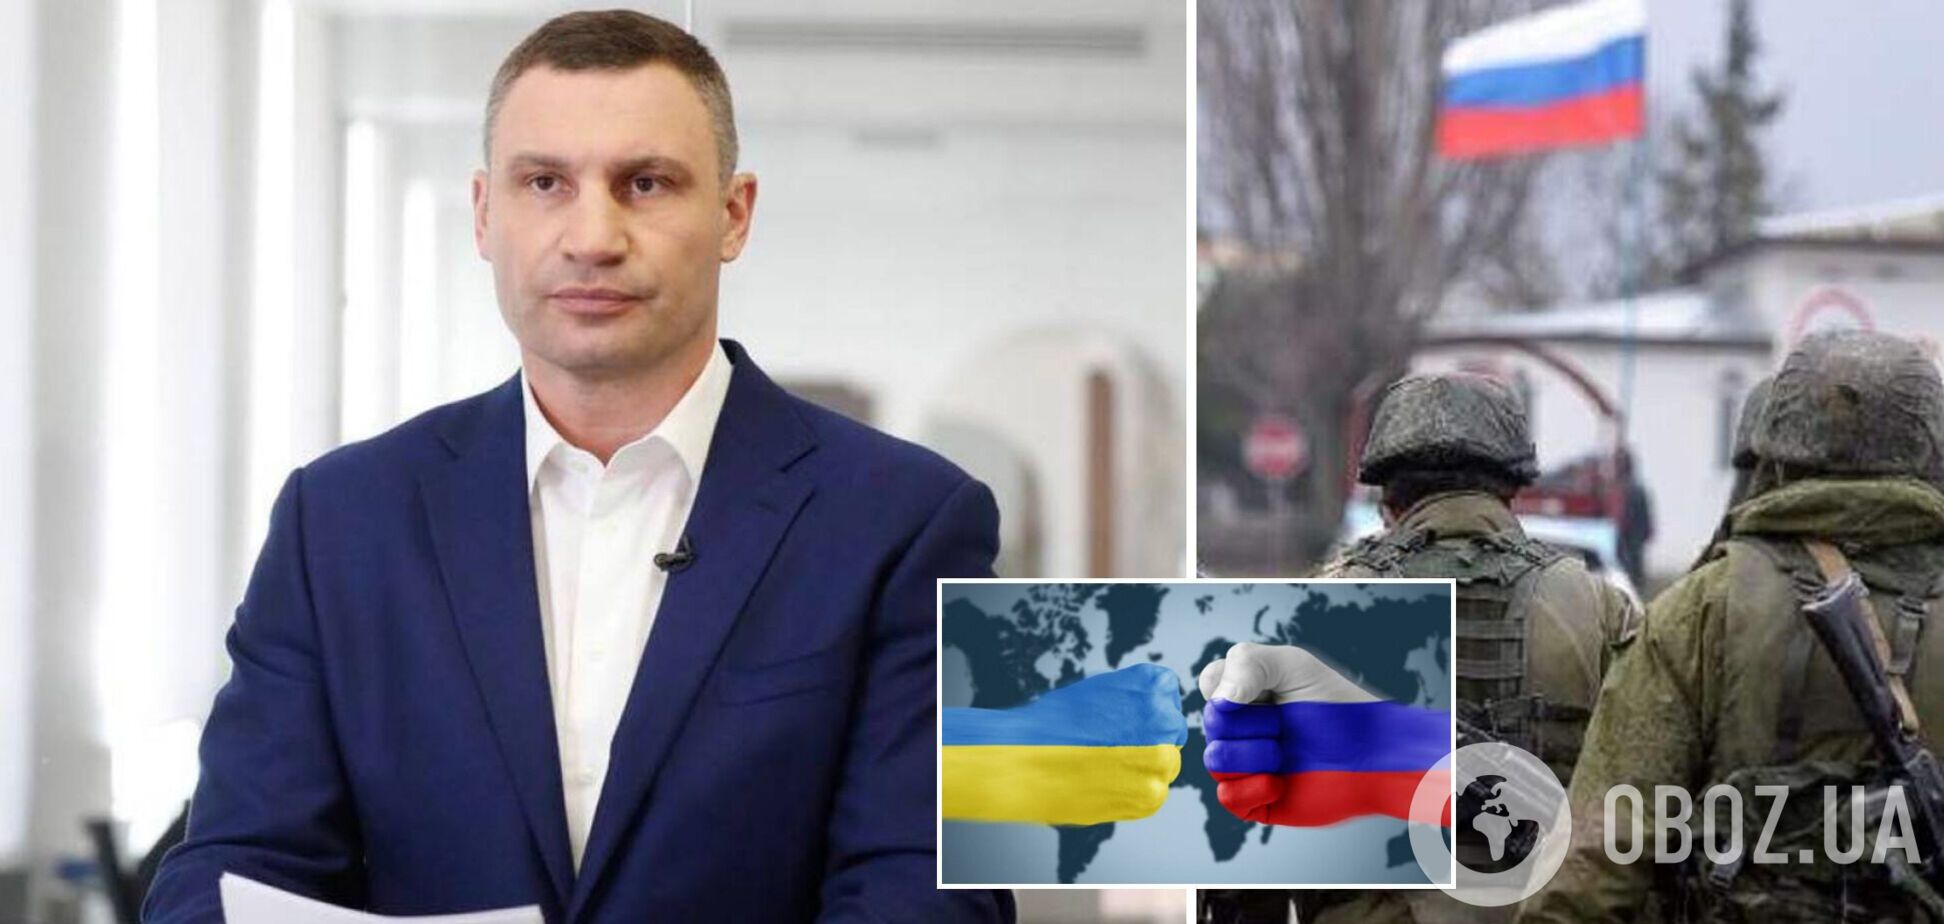 Візьму автомат і піду воювати: Кличко заявив, що готовий стати на захист України у разі вторгнення РФ. Відео